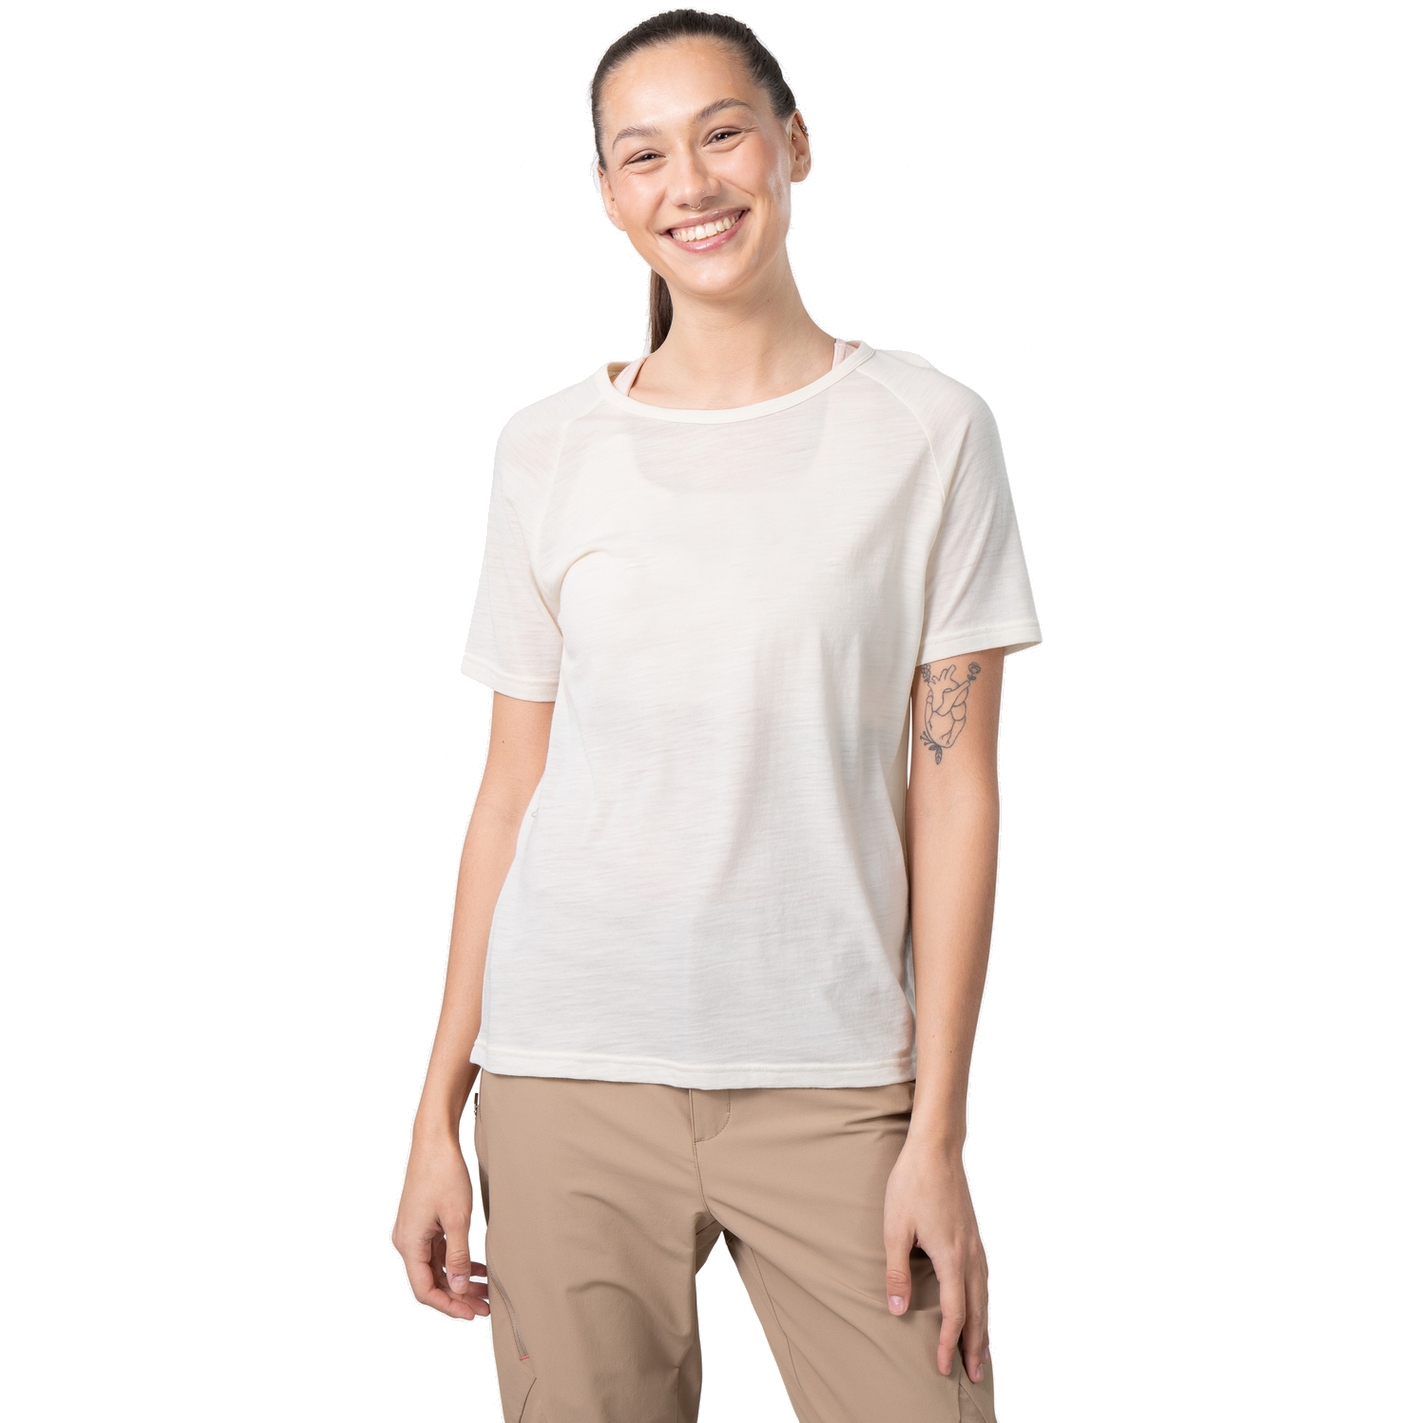 Picture of Kari Traa Sanne Wool T-Shirt Women - light beige